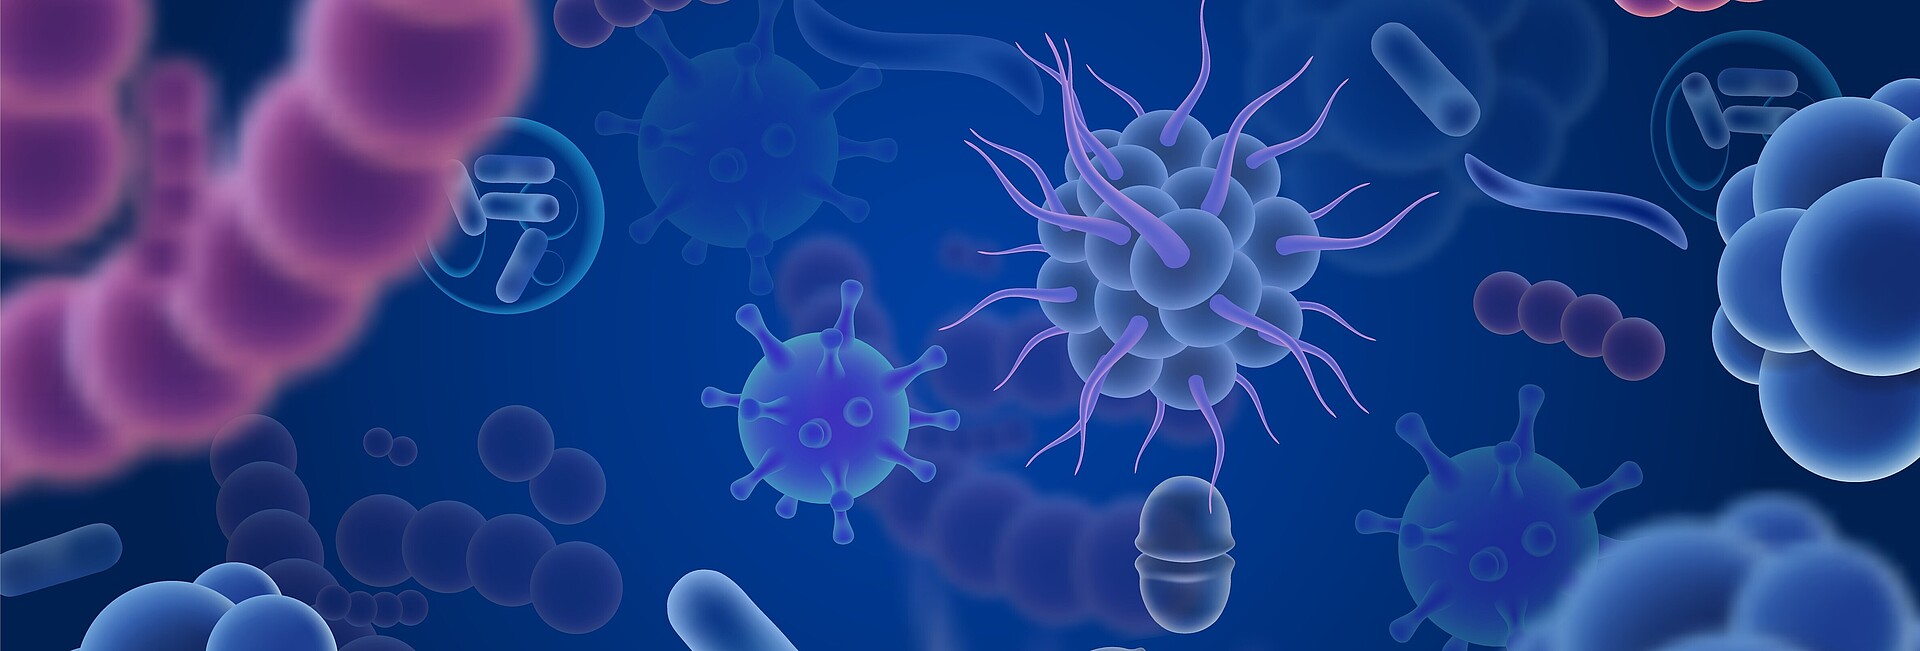 Abstrakte Viren auf blauem Hintergrund